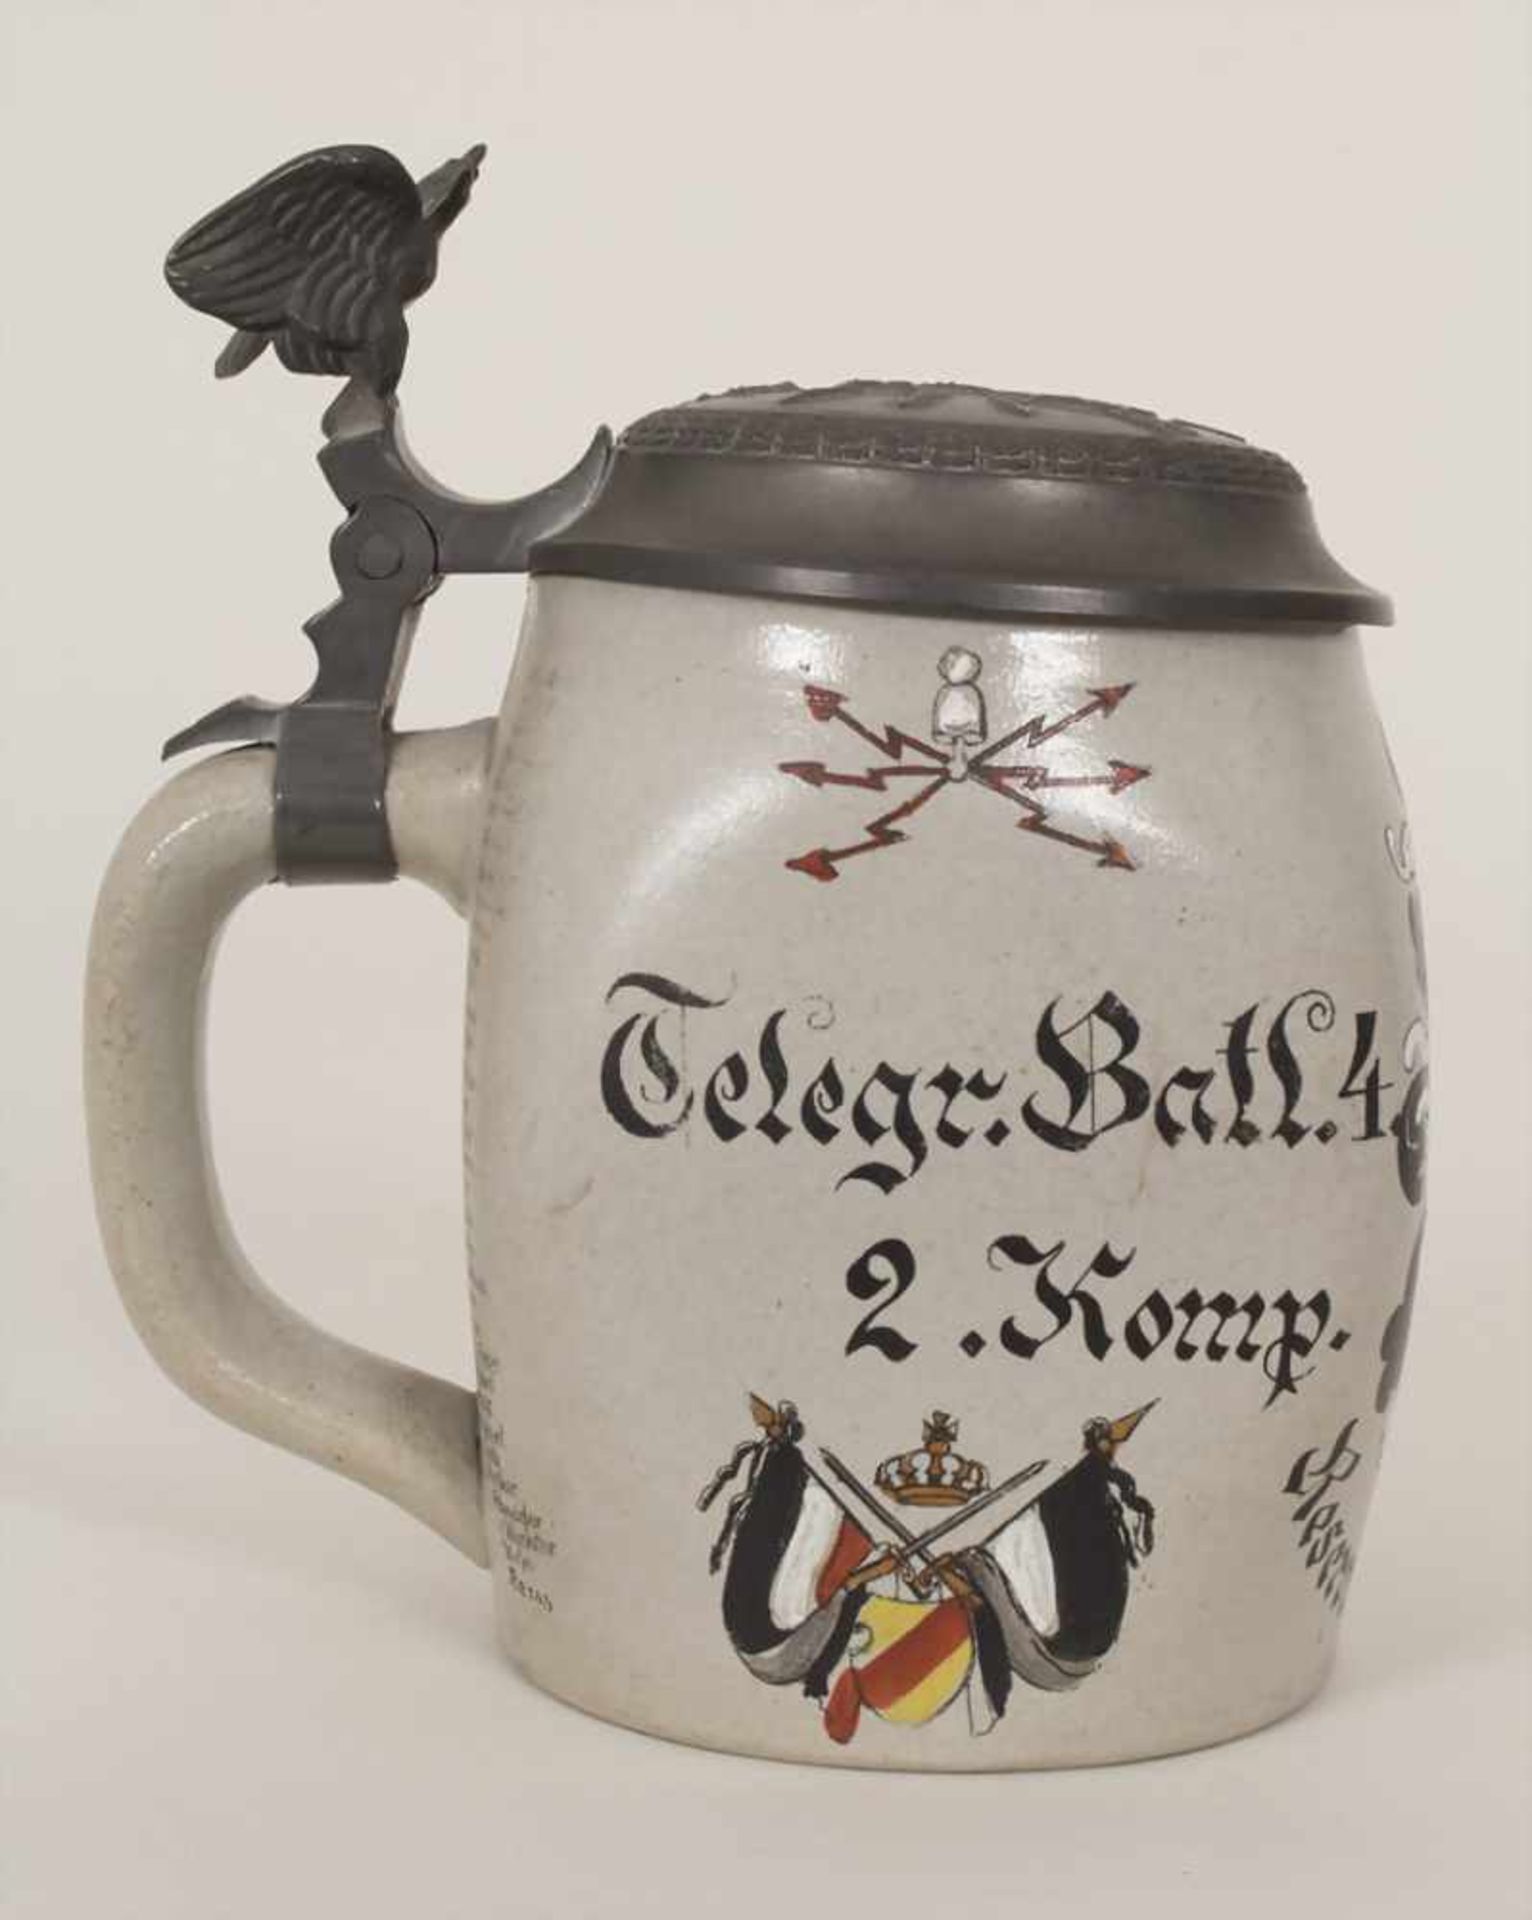 Reservistenkrug und Ordenspange mit Urkunden / A reservist beer mug and military orders, - Image 13 of 23